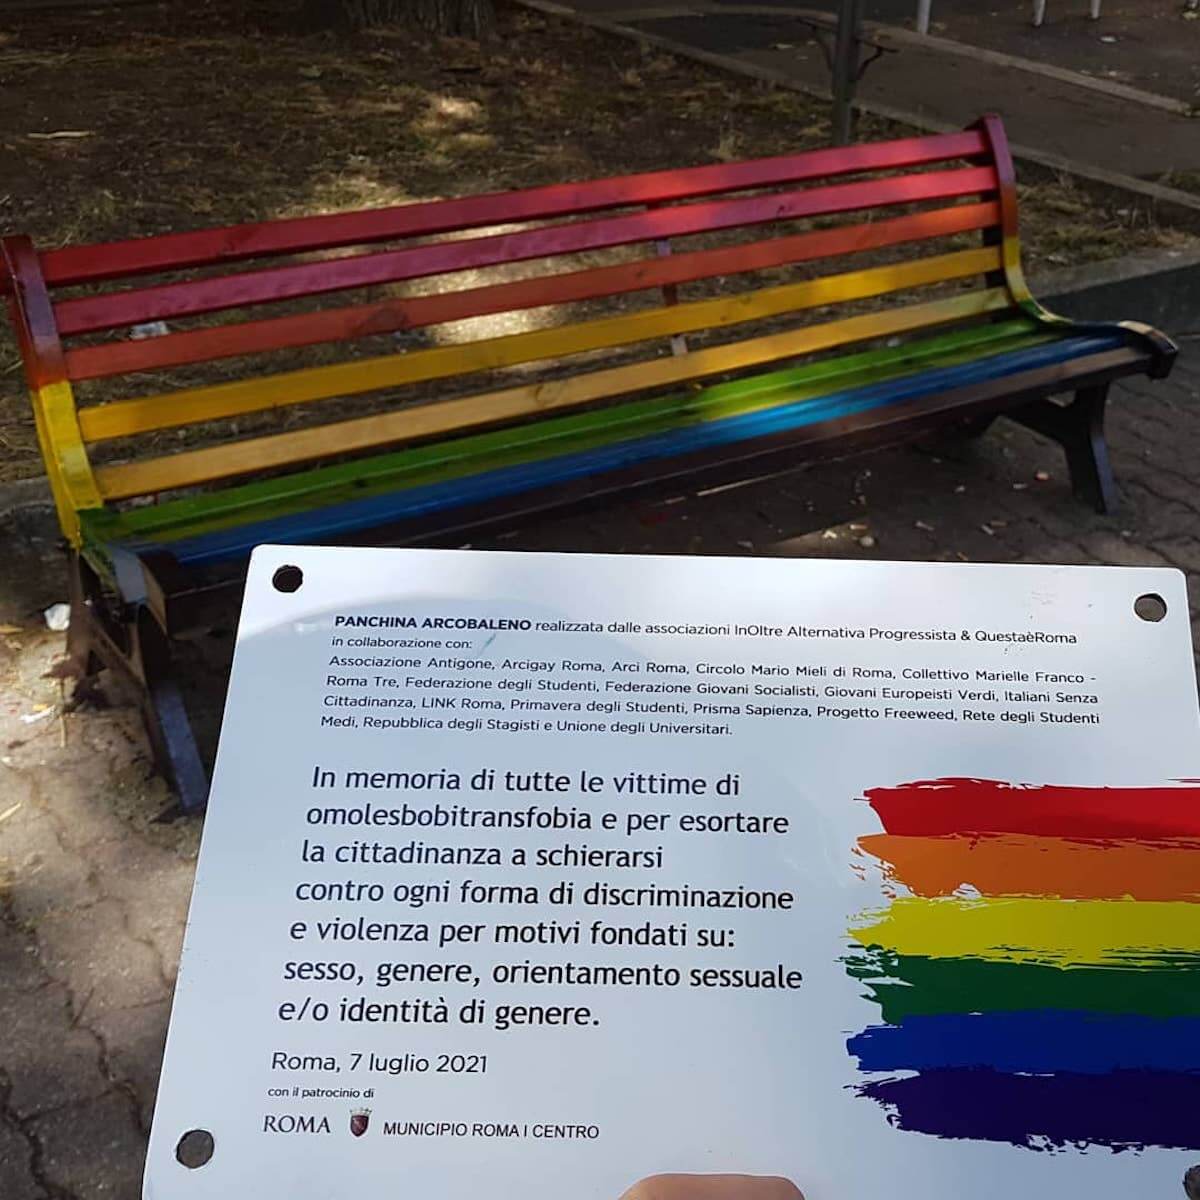 Panchina Rainbow a due passi dal Vaticano: "In memoria di tutte le vittime di omotransfobia" - Panchina Rainbow a due passi dal Vaticano 2 - Gay.it